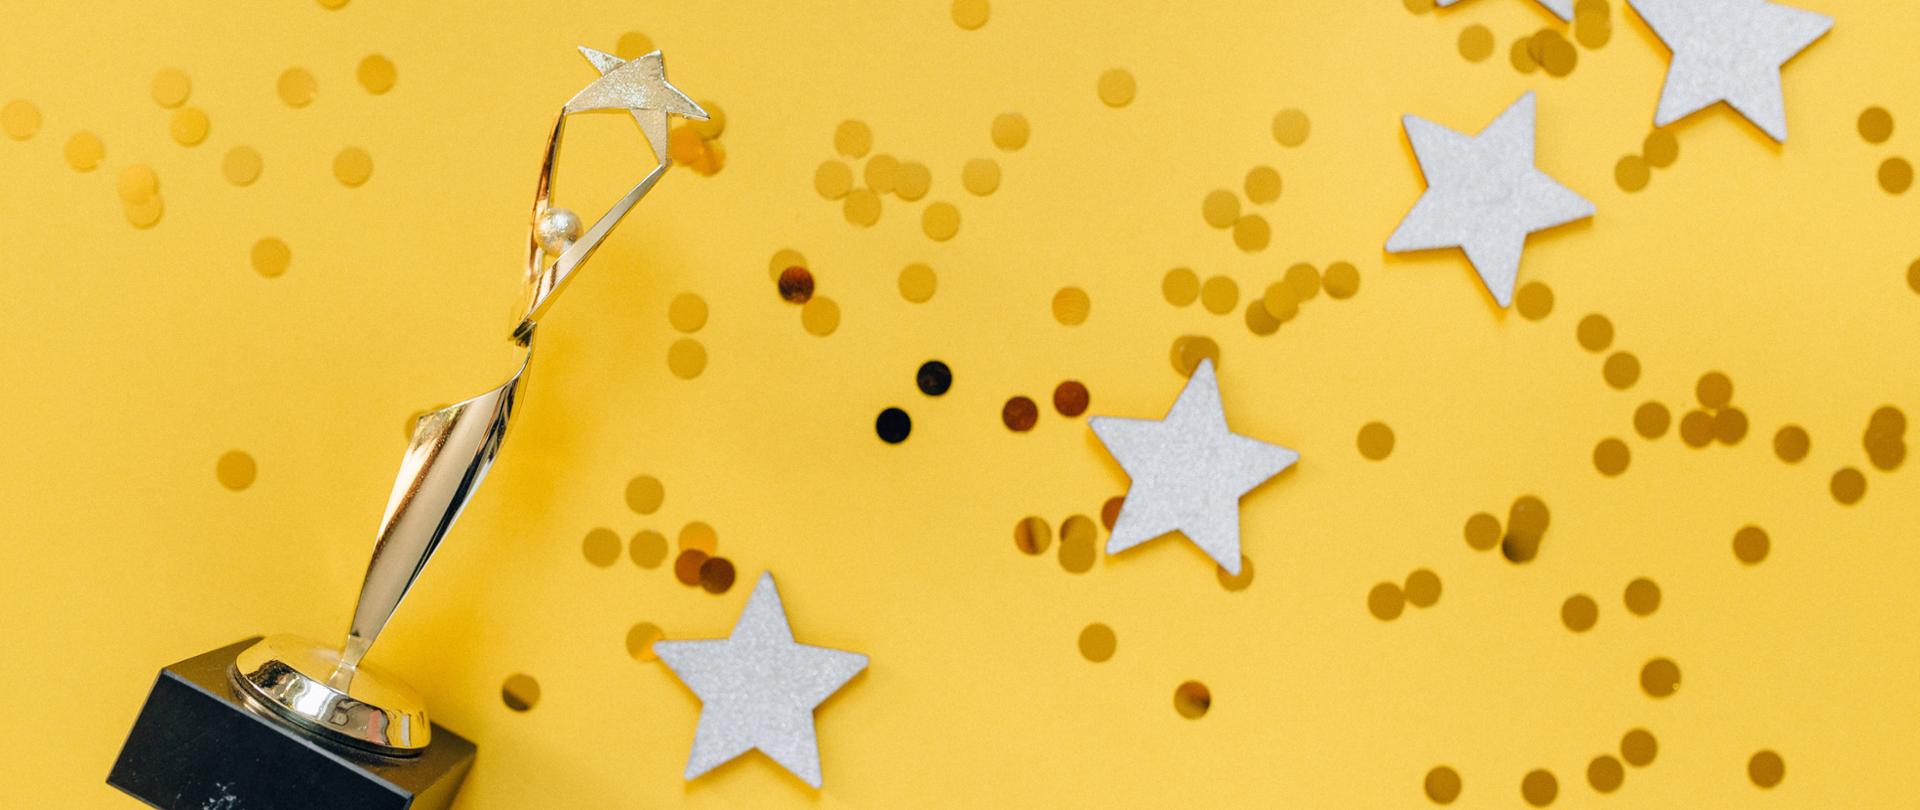 fotografia przedstawiająca złotą statuetkę postaci trzymającej gwiazdę, złote cekiny oraz pięć gwiazd rozrzuconych na żółtym tle